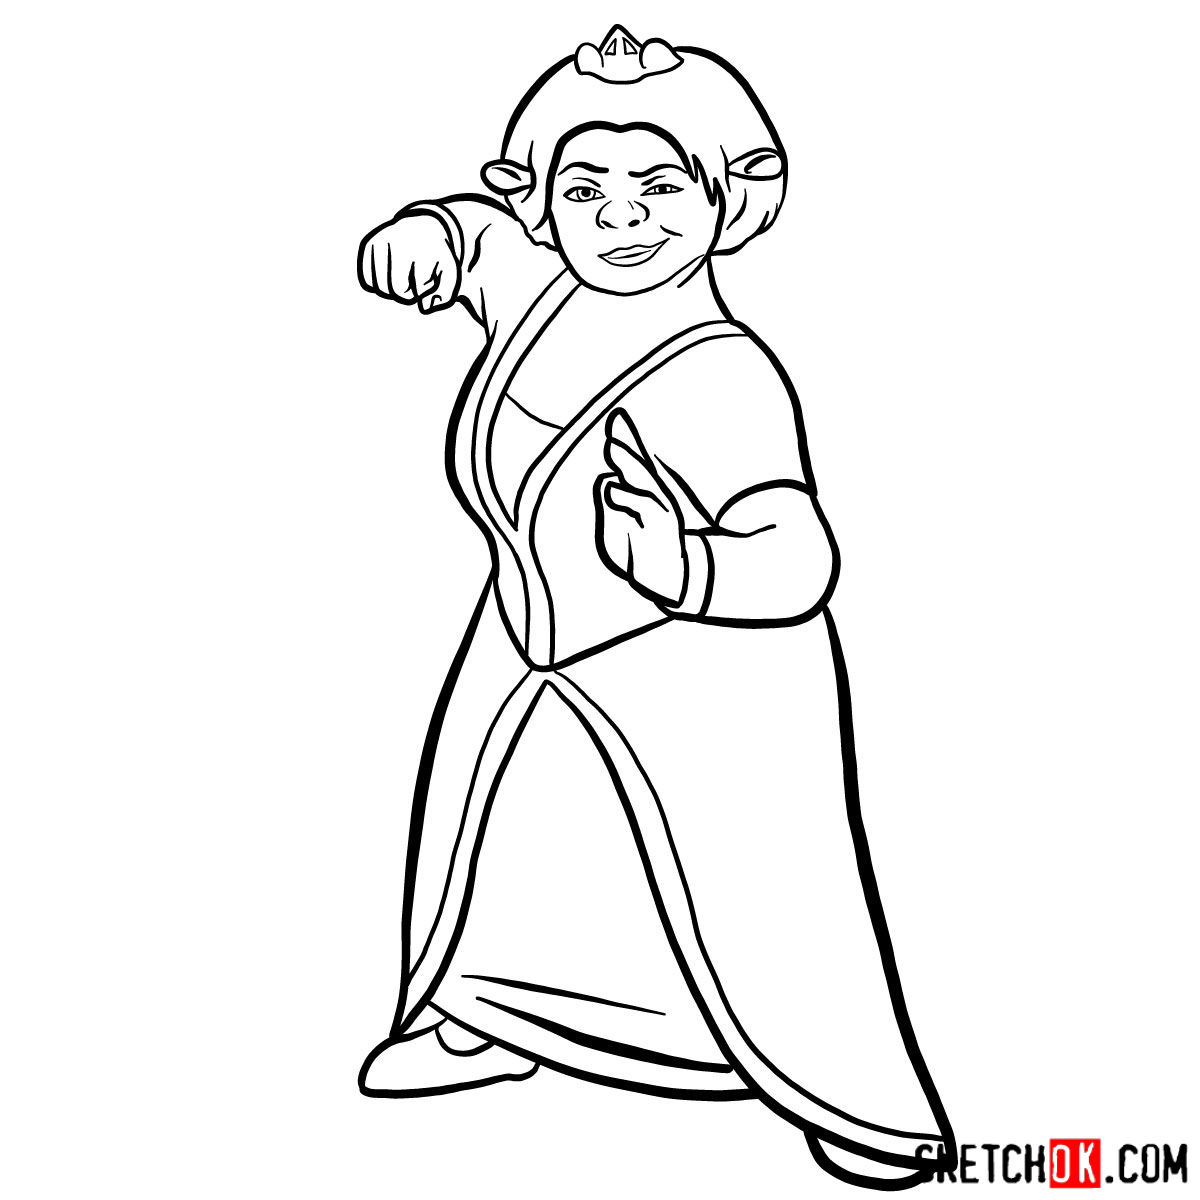 How to draw Princess Fiona - step 12